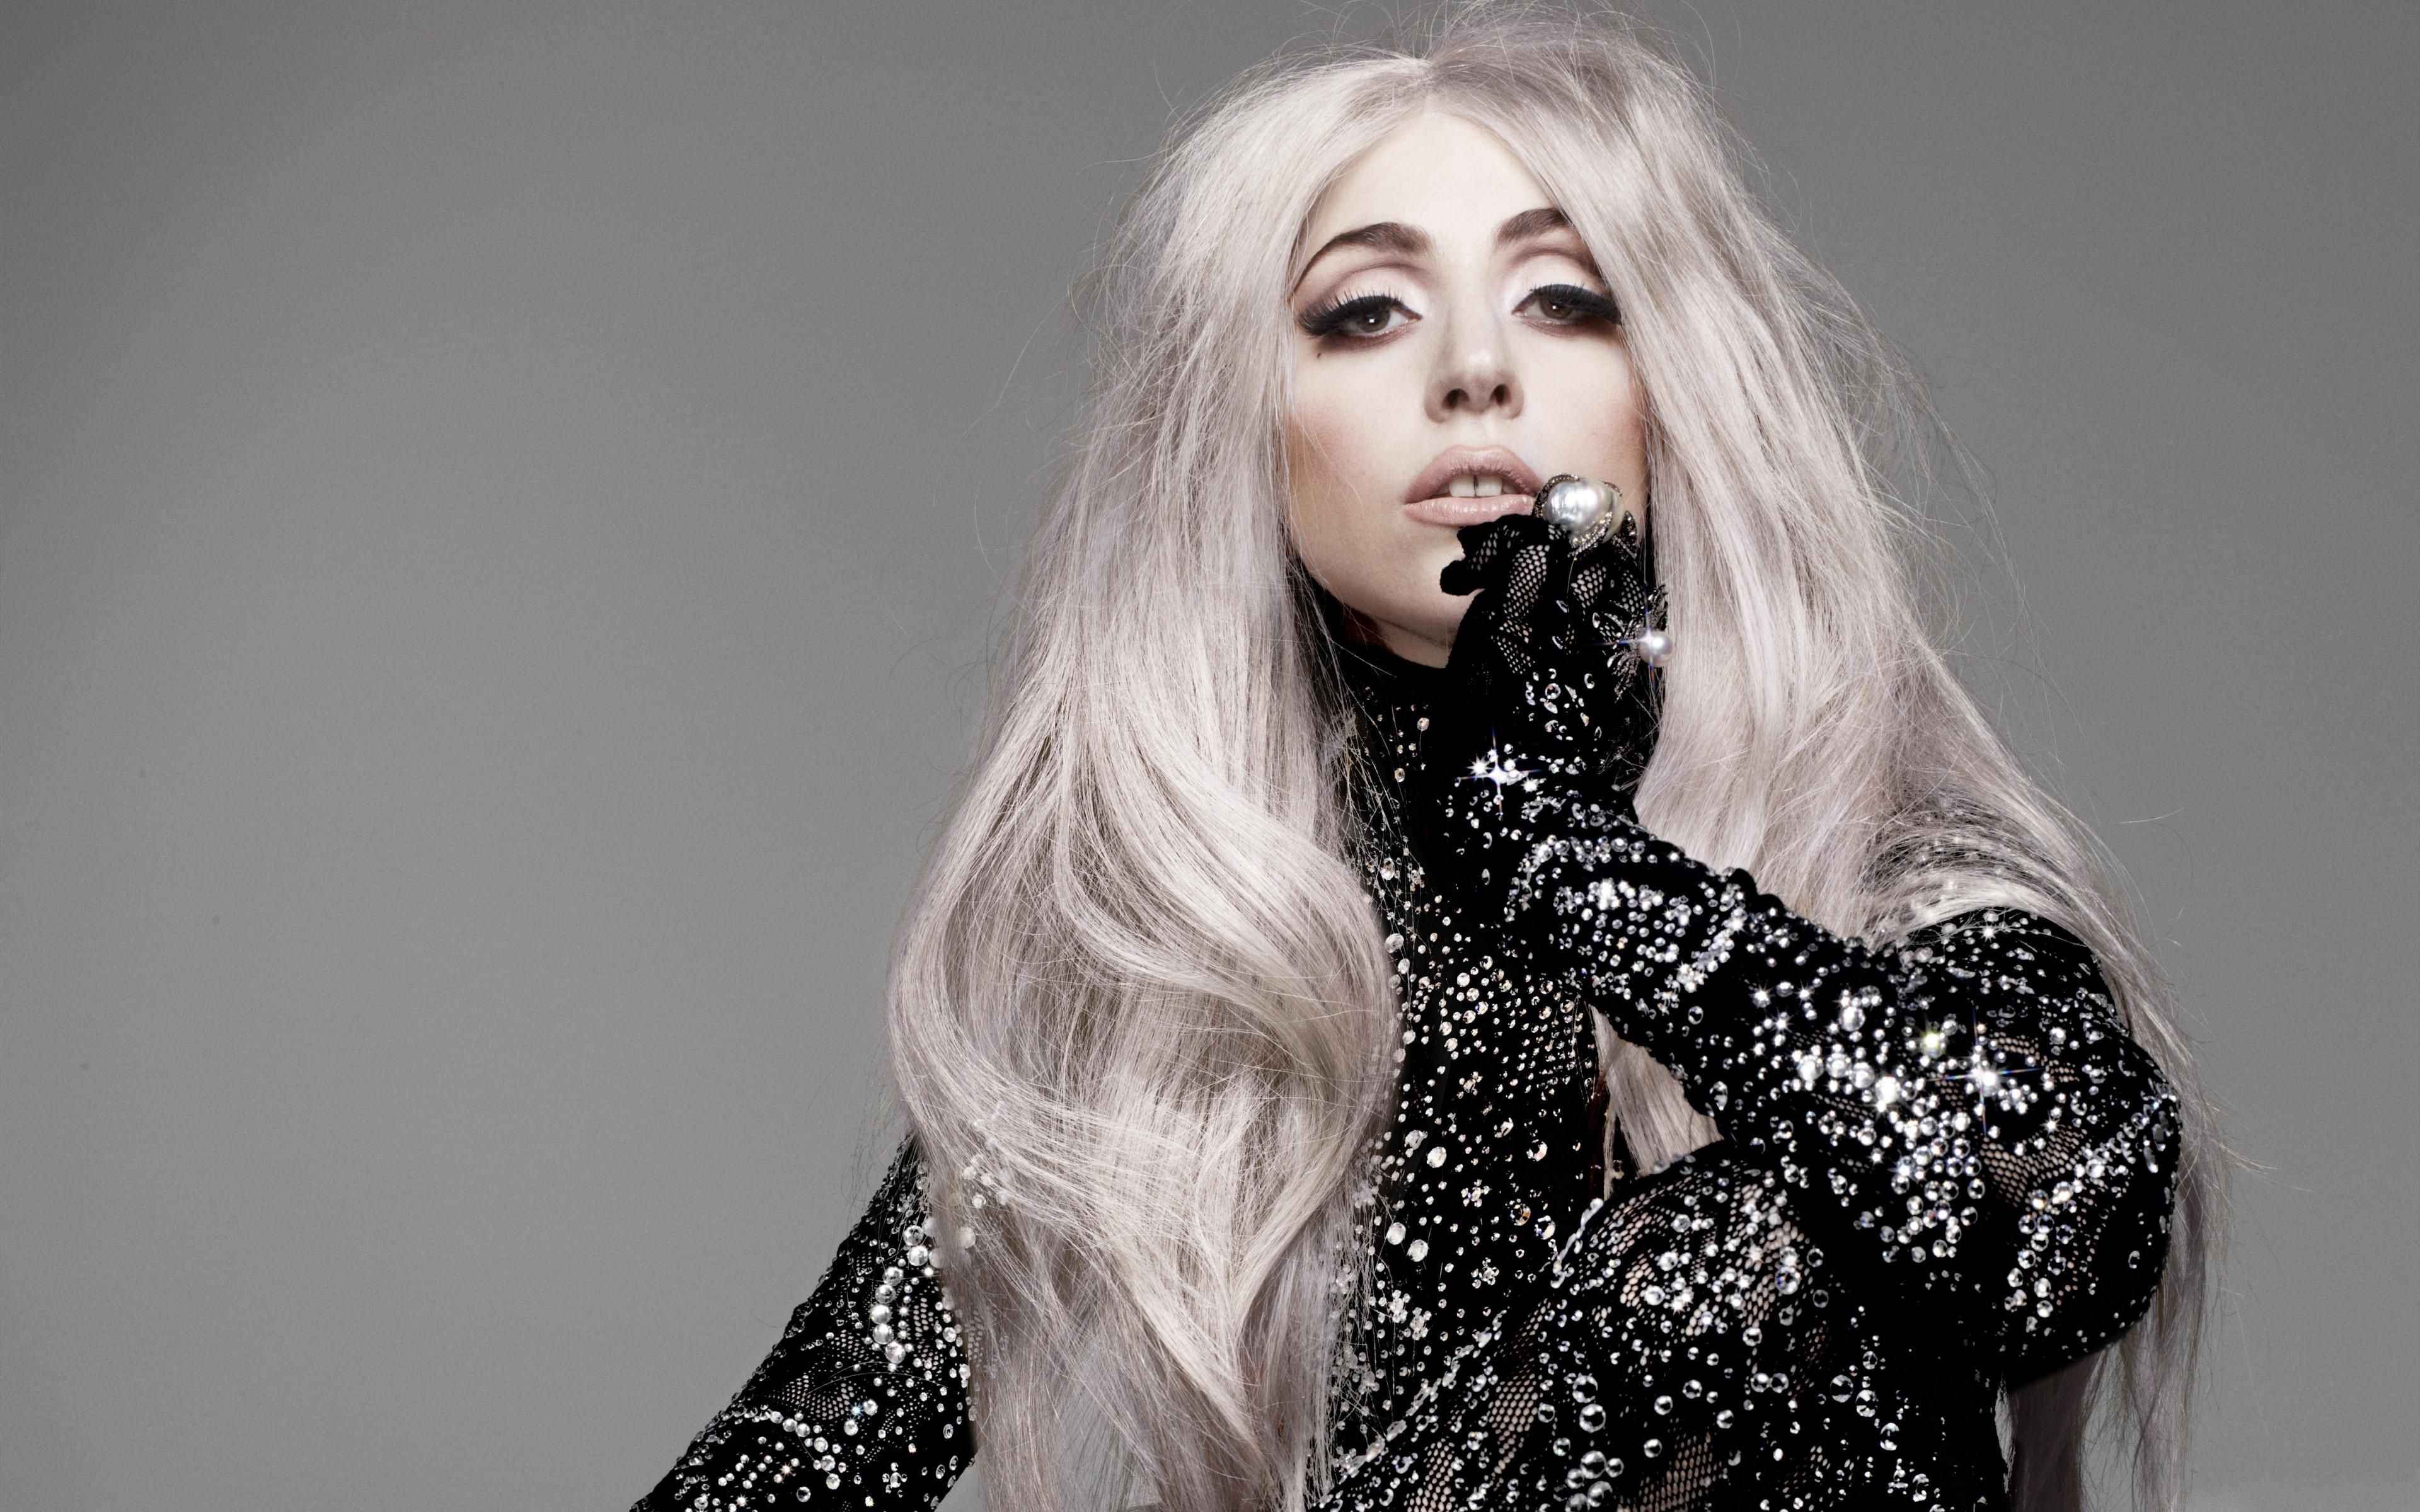 ‘Levaria uma bala por vocês’, diz Lady Gaga em discurso a favor dos gays